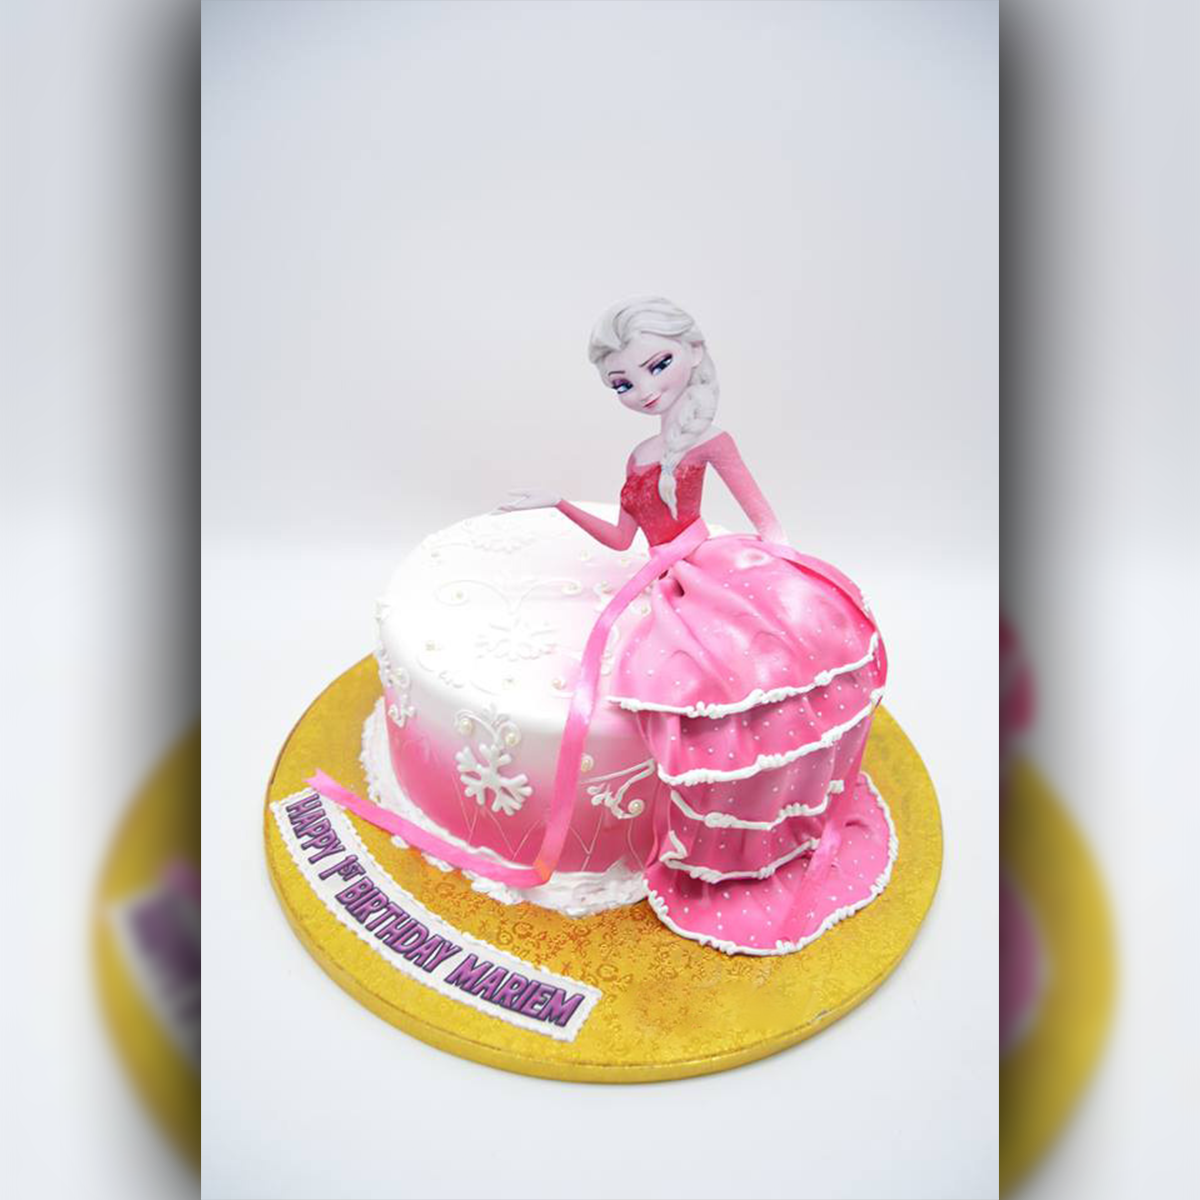 Designer Frozen Theme Cake | bakehoney.com